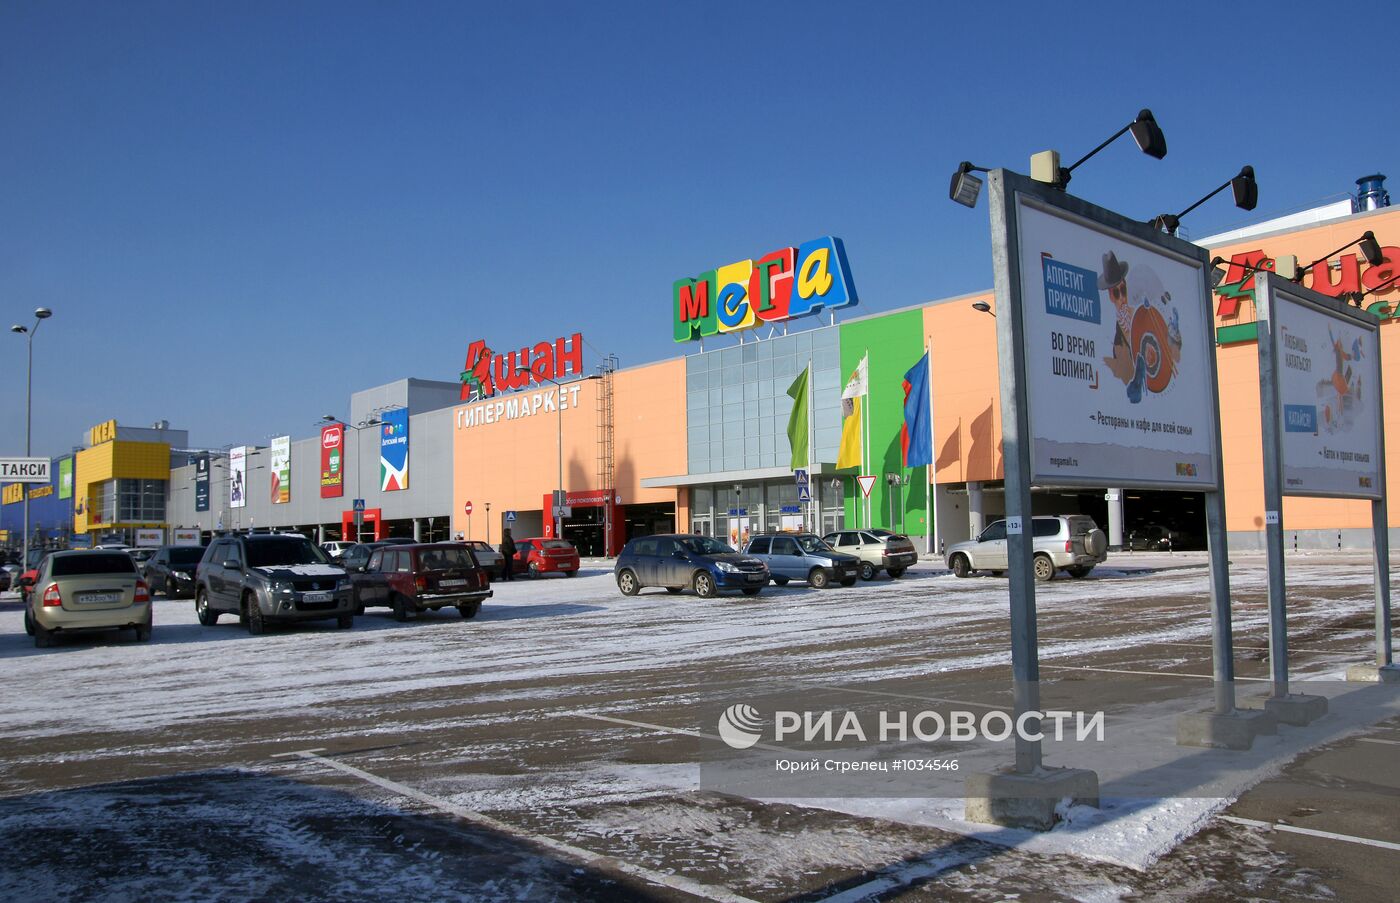 Открытие торгового центра "МЕГА" в Самаре